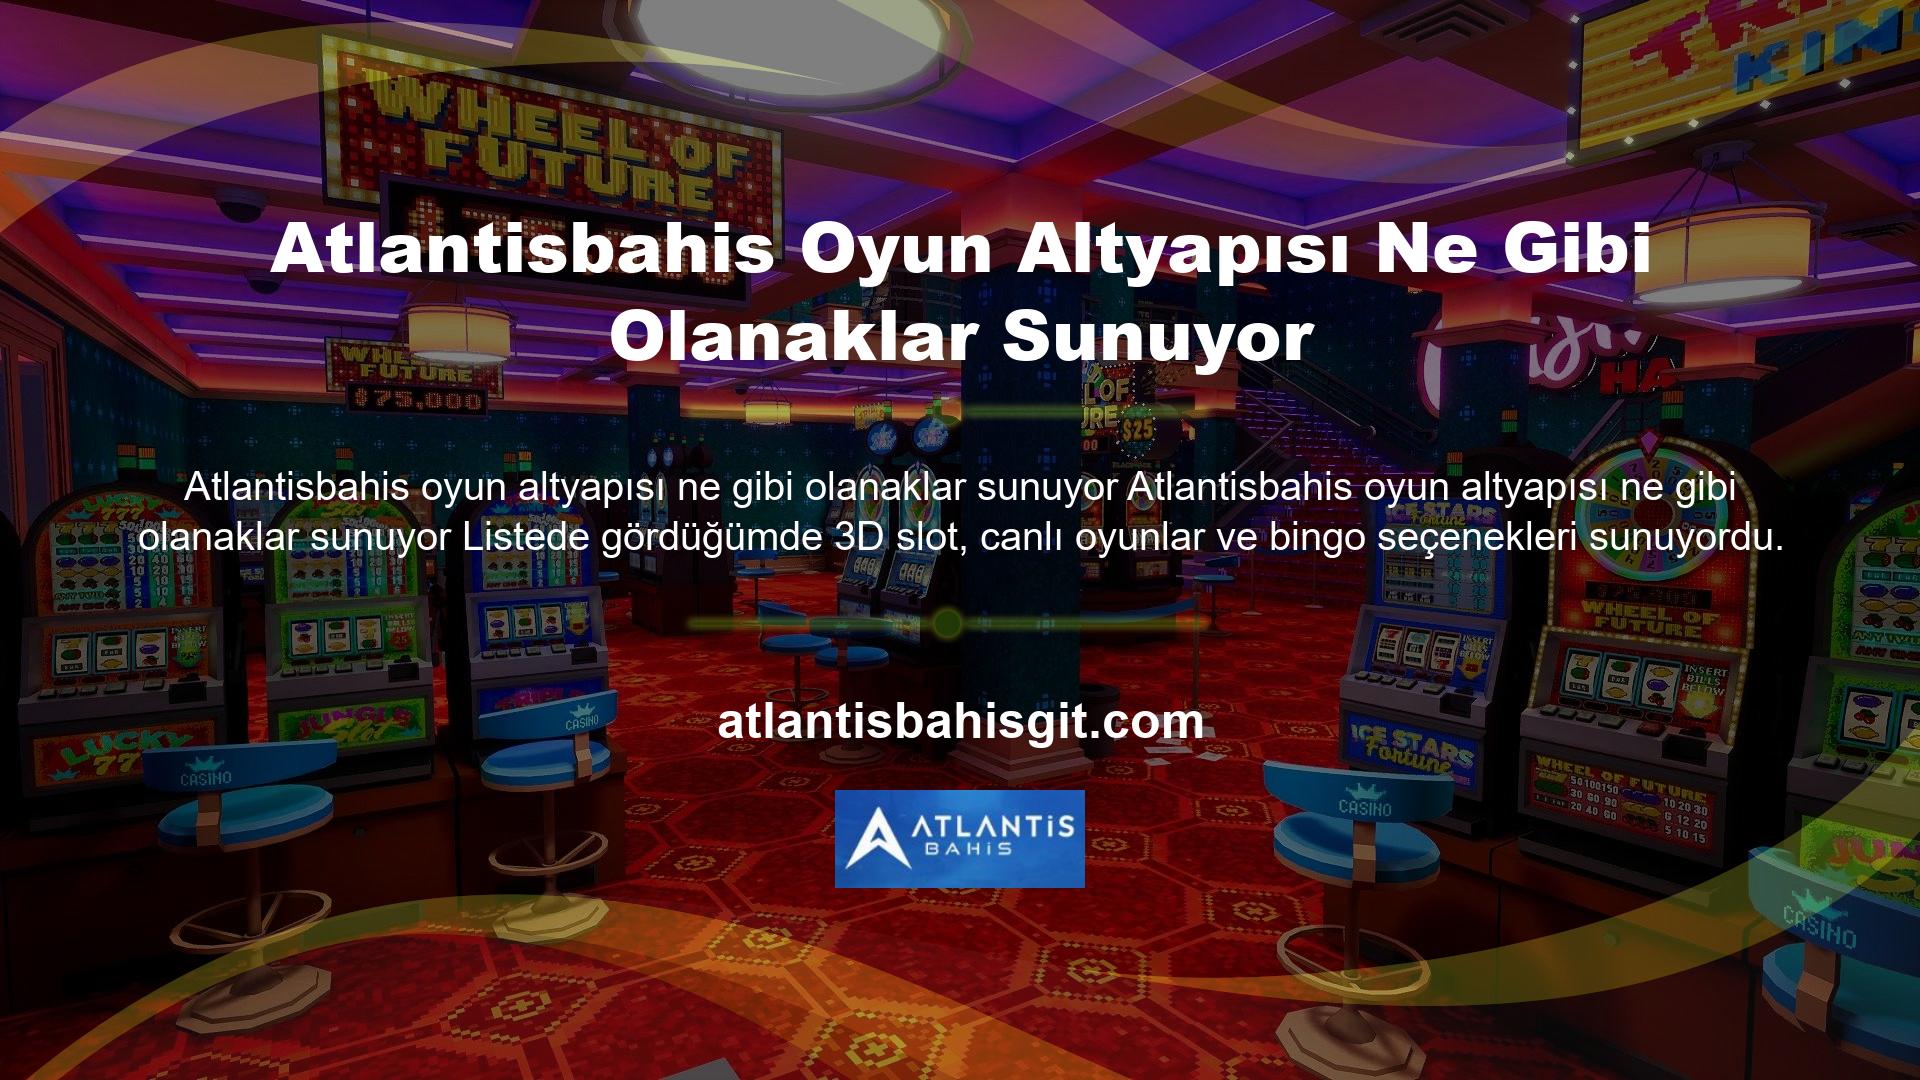 Sitenin hizmet seçeneklerinden canlı casino bölümüne baktım ve rulet, bakara, blackjack, poker ve benzeri oyun seçeneklerini sunduklarını gördüm